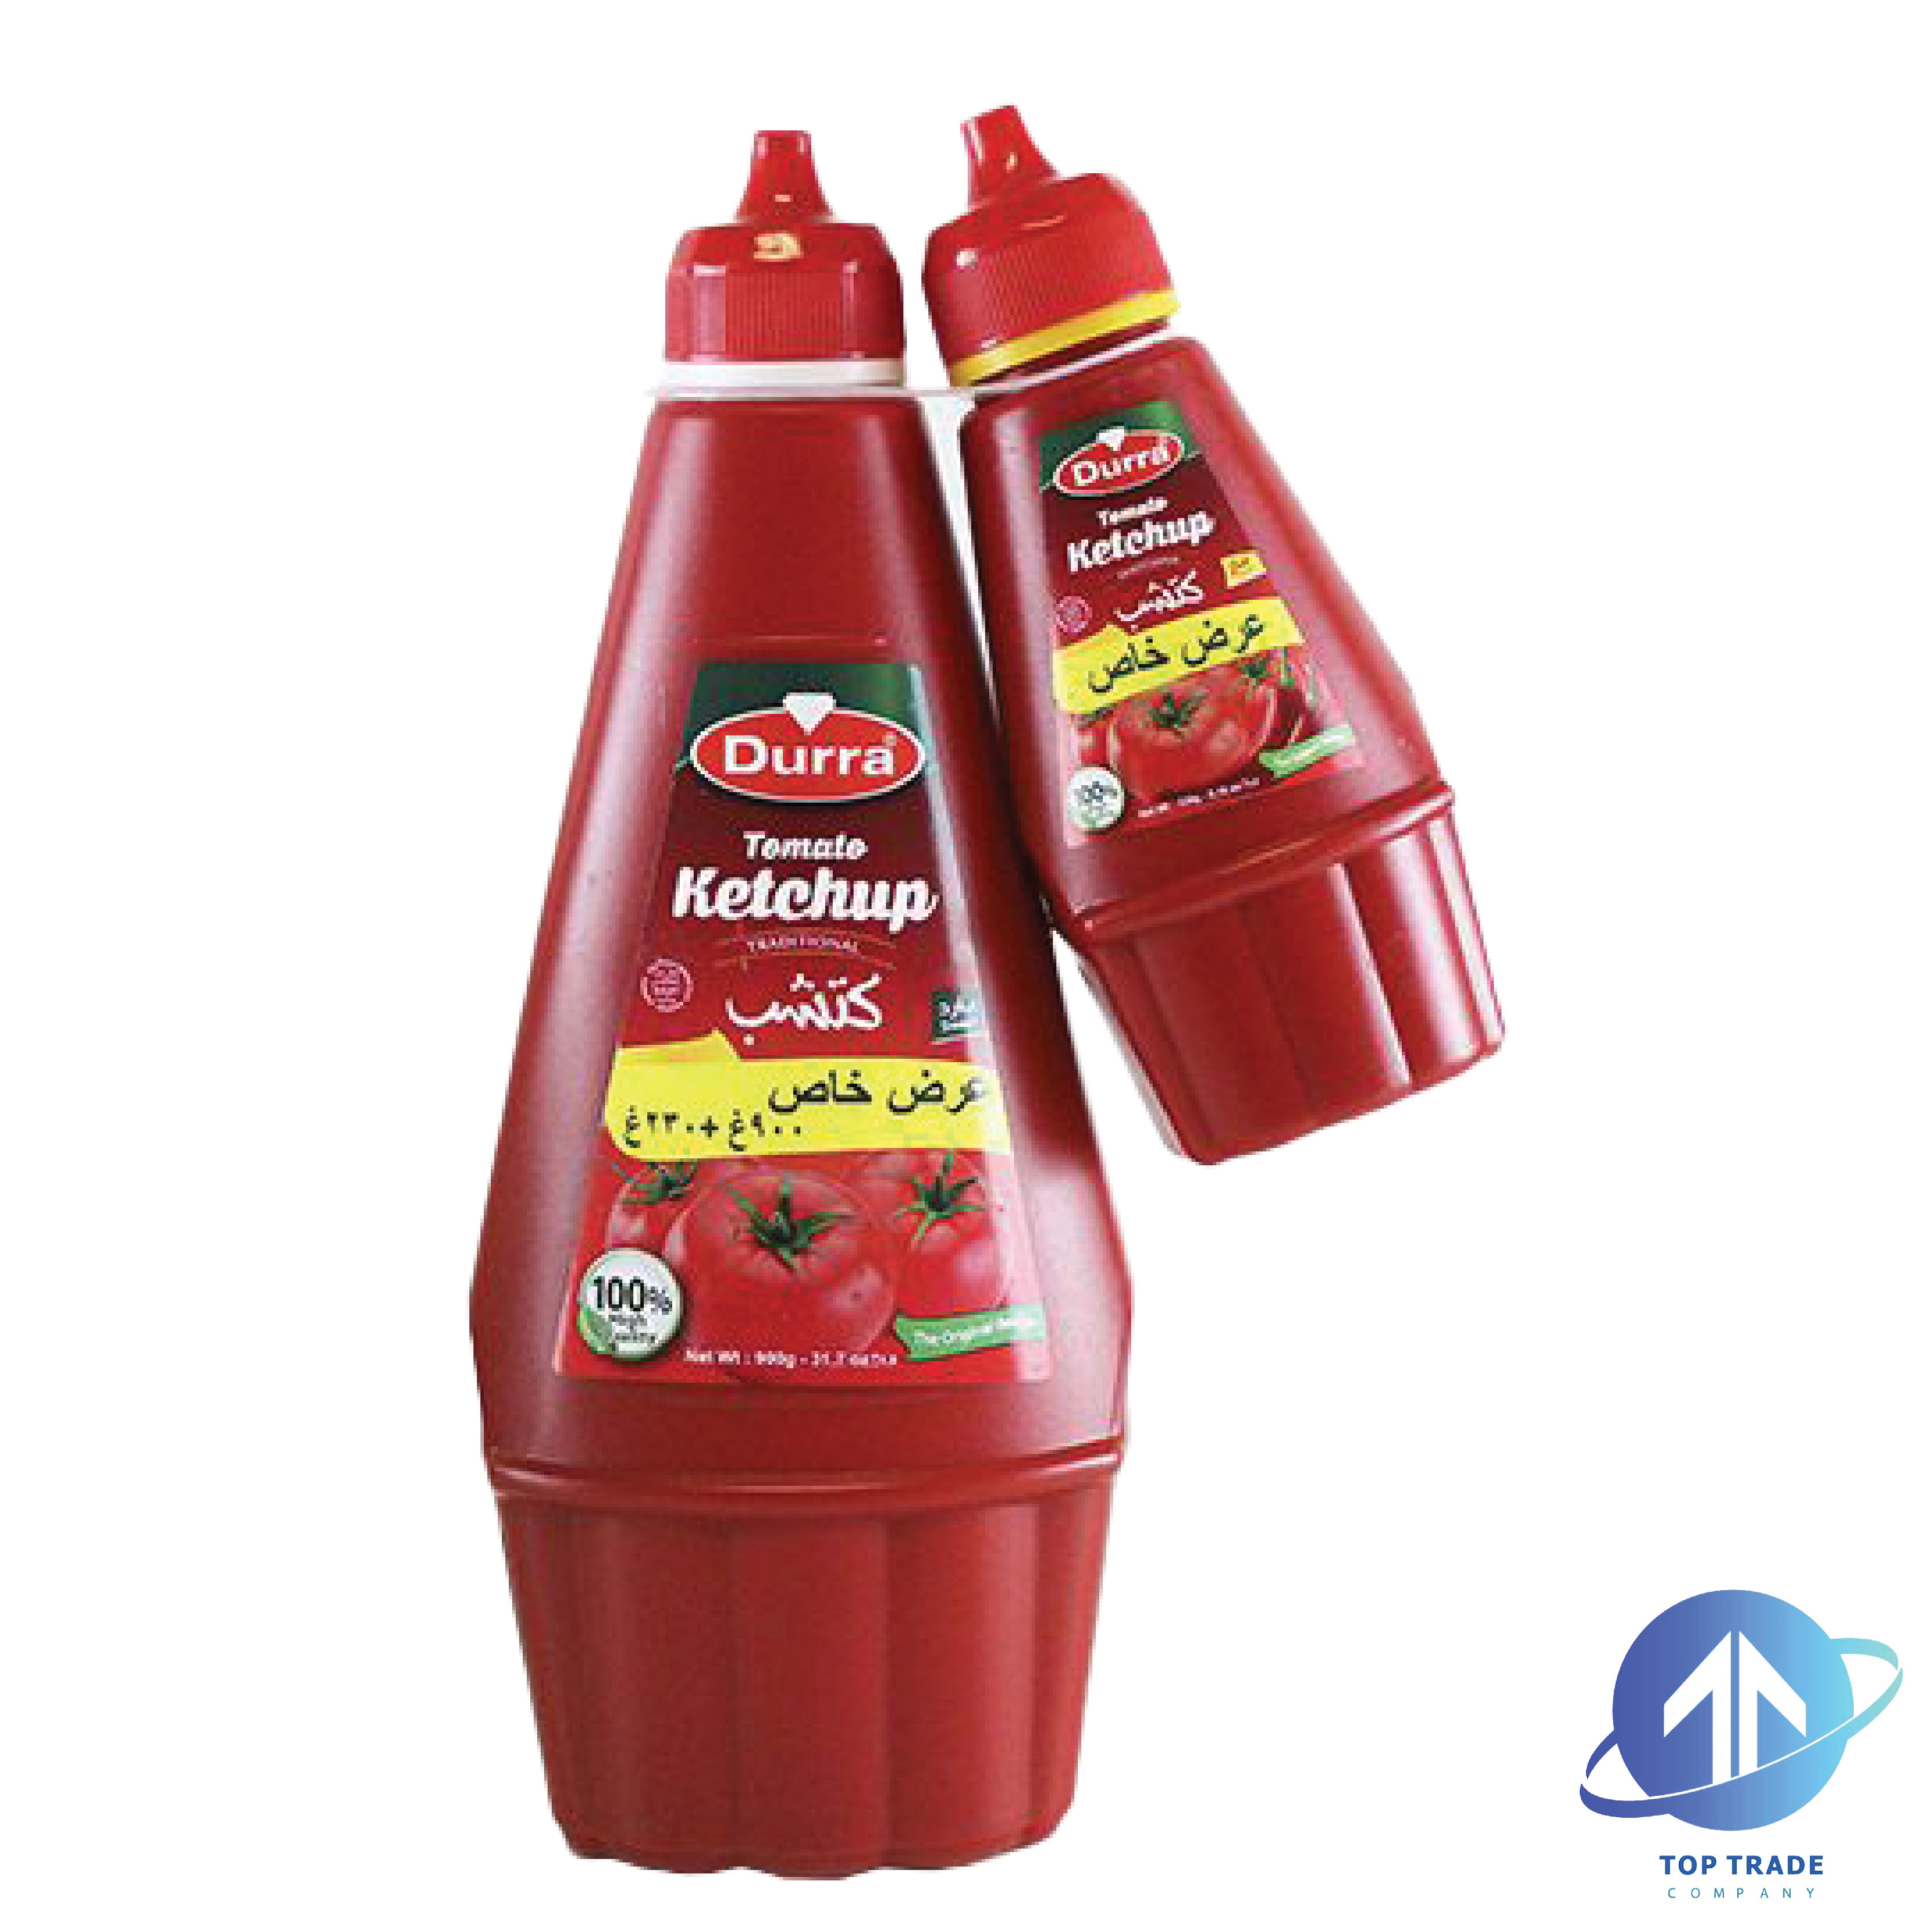 Durra ketchup offer 900+230gr 